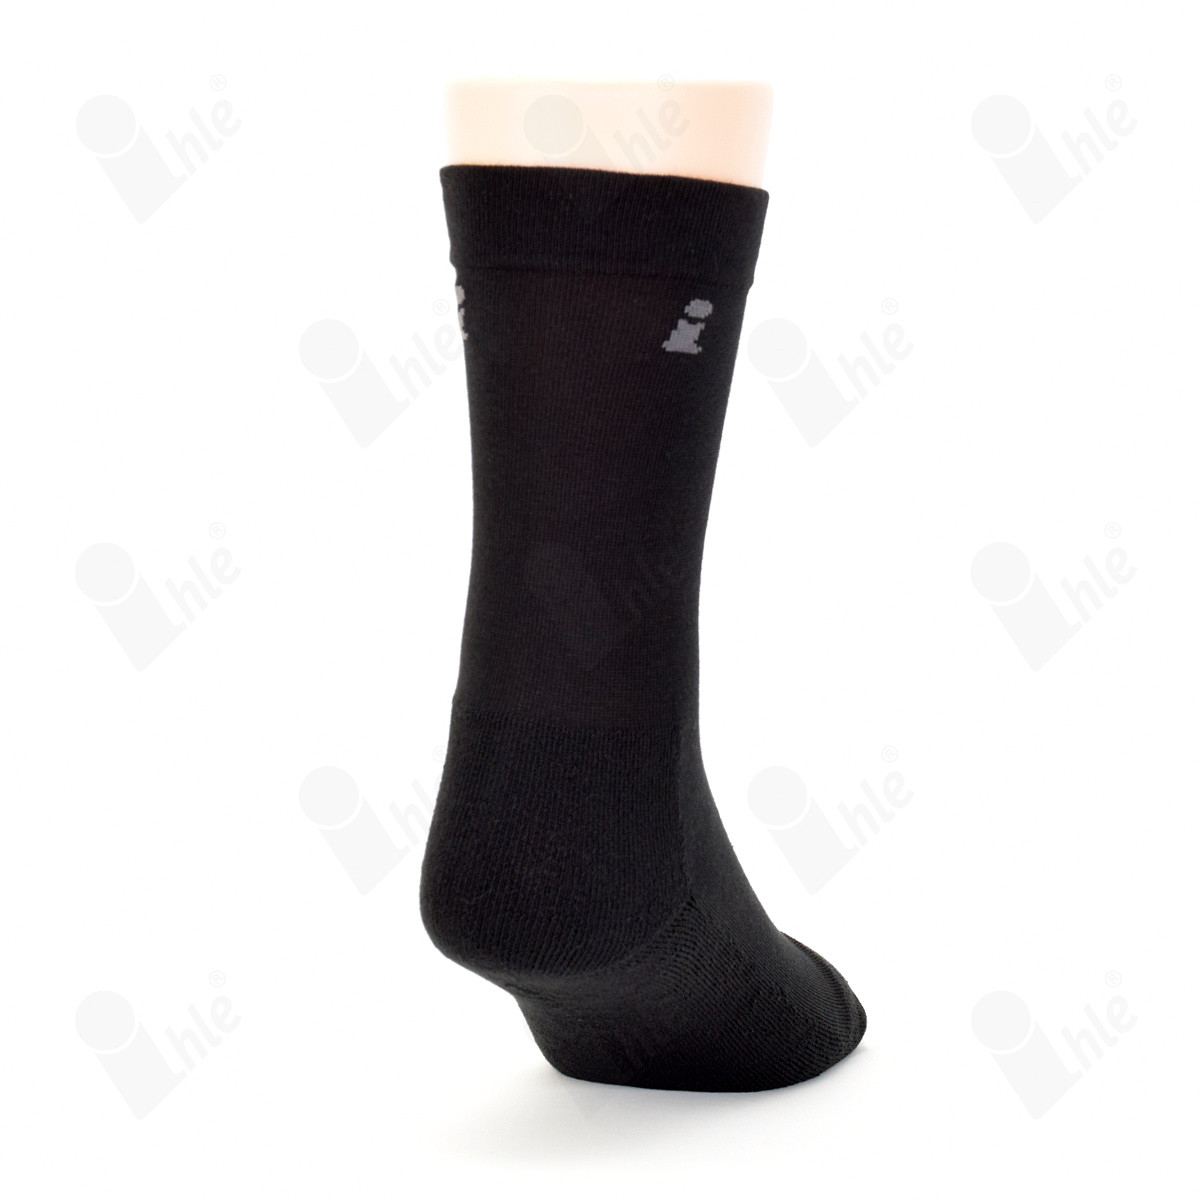 Ihle Socke halbplüsch schwarz Gr. 43-46